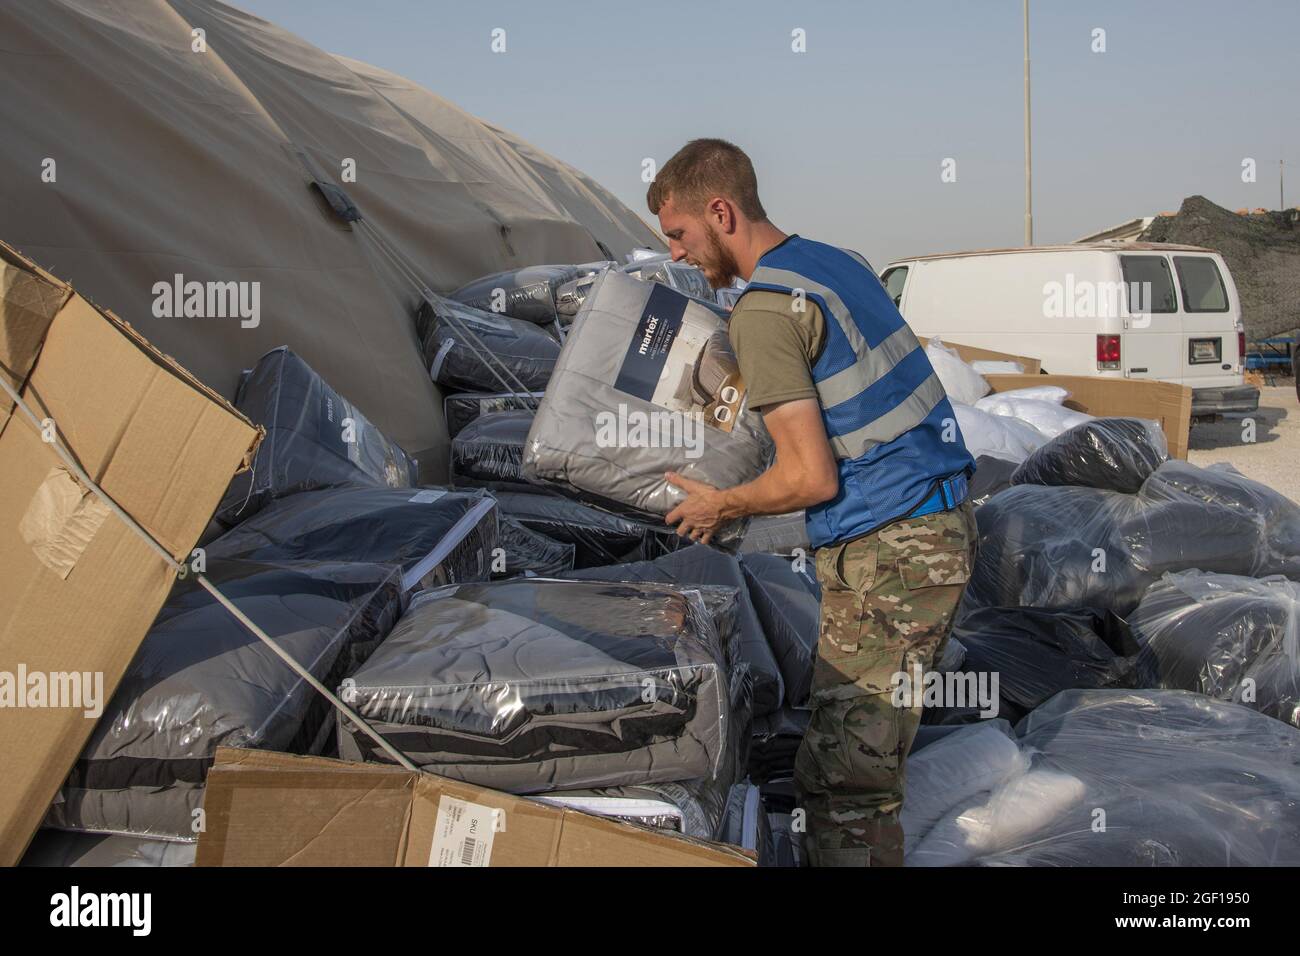 Un membro del servizio degli Stati Uniti scarica le scatole di biancheria da letto per gli evacuati qualificati il 21 agosto 2021, in un luogo non divulgato da qualche parte in Asia sud-occidentale. Nell'ambito dell'evacuazione dell'Afghanistan, gli sfollati sono partiti dall'aeroporto internazionale Hamid Karzai di Kabul, Afghanistan, su più aerei militari. Foto dello staff Sgt. Kylee Gardner/USA Air Force/UPI Credit: UPI/Alamy Live News Foto Stock